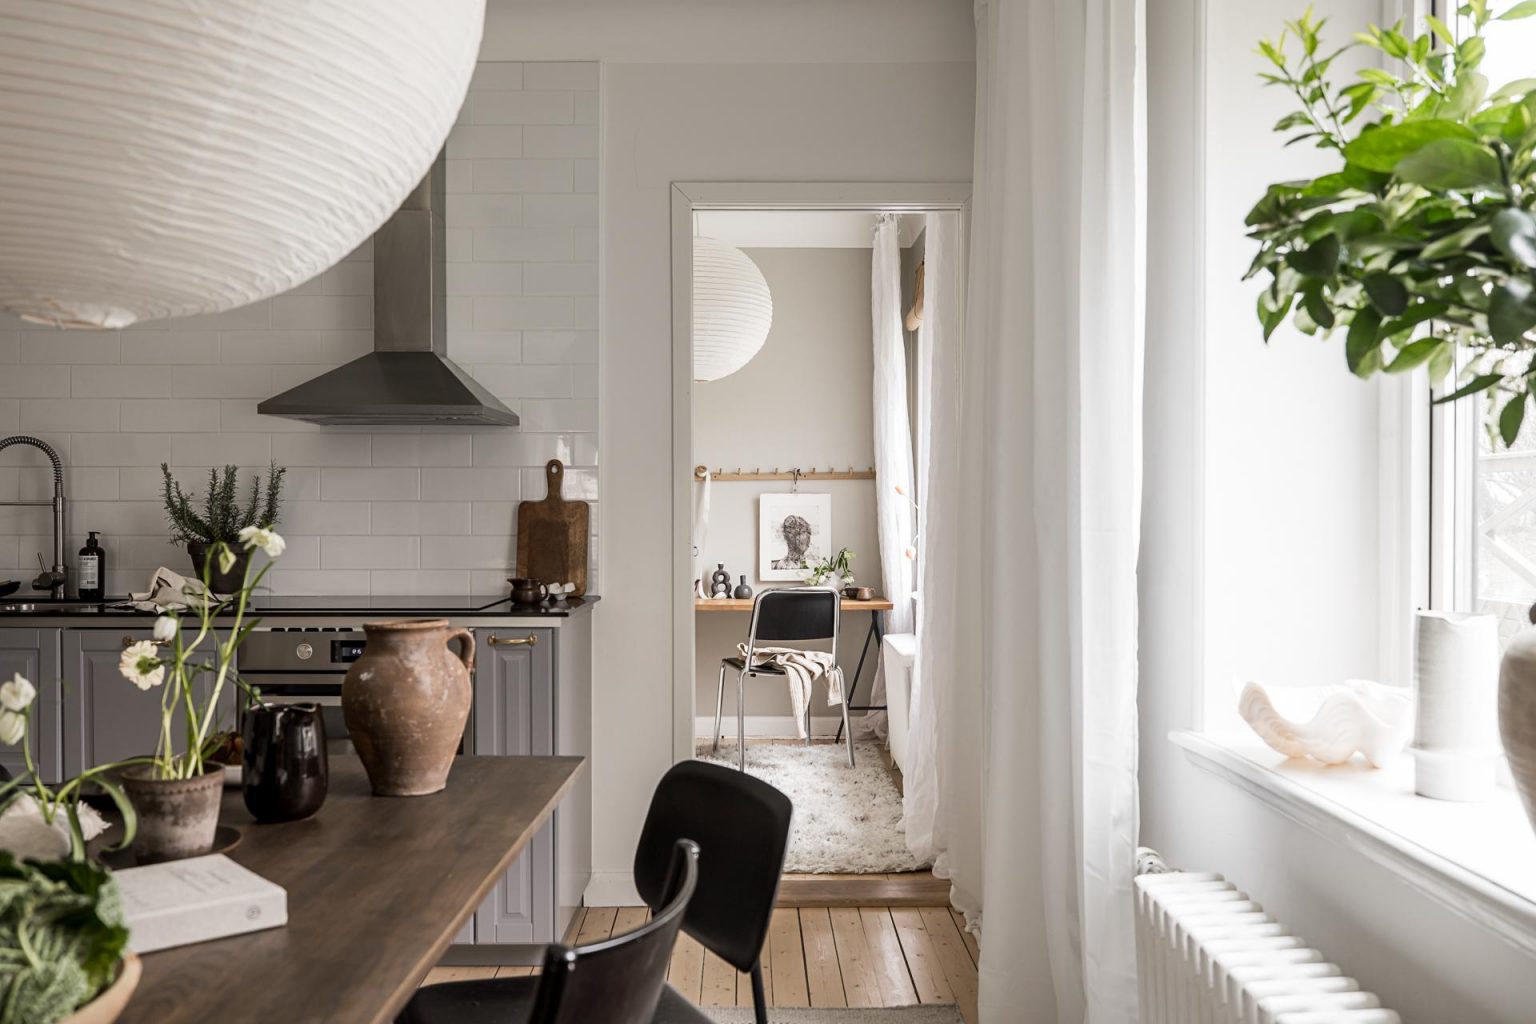 cuisine IKEA grise trois-pièces de 57m2 décoration scandinave